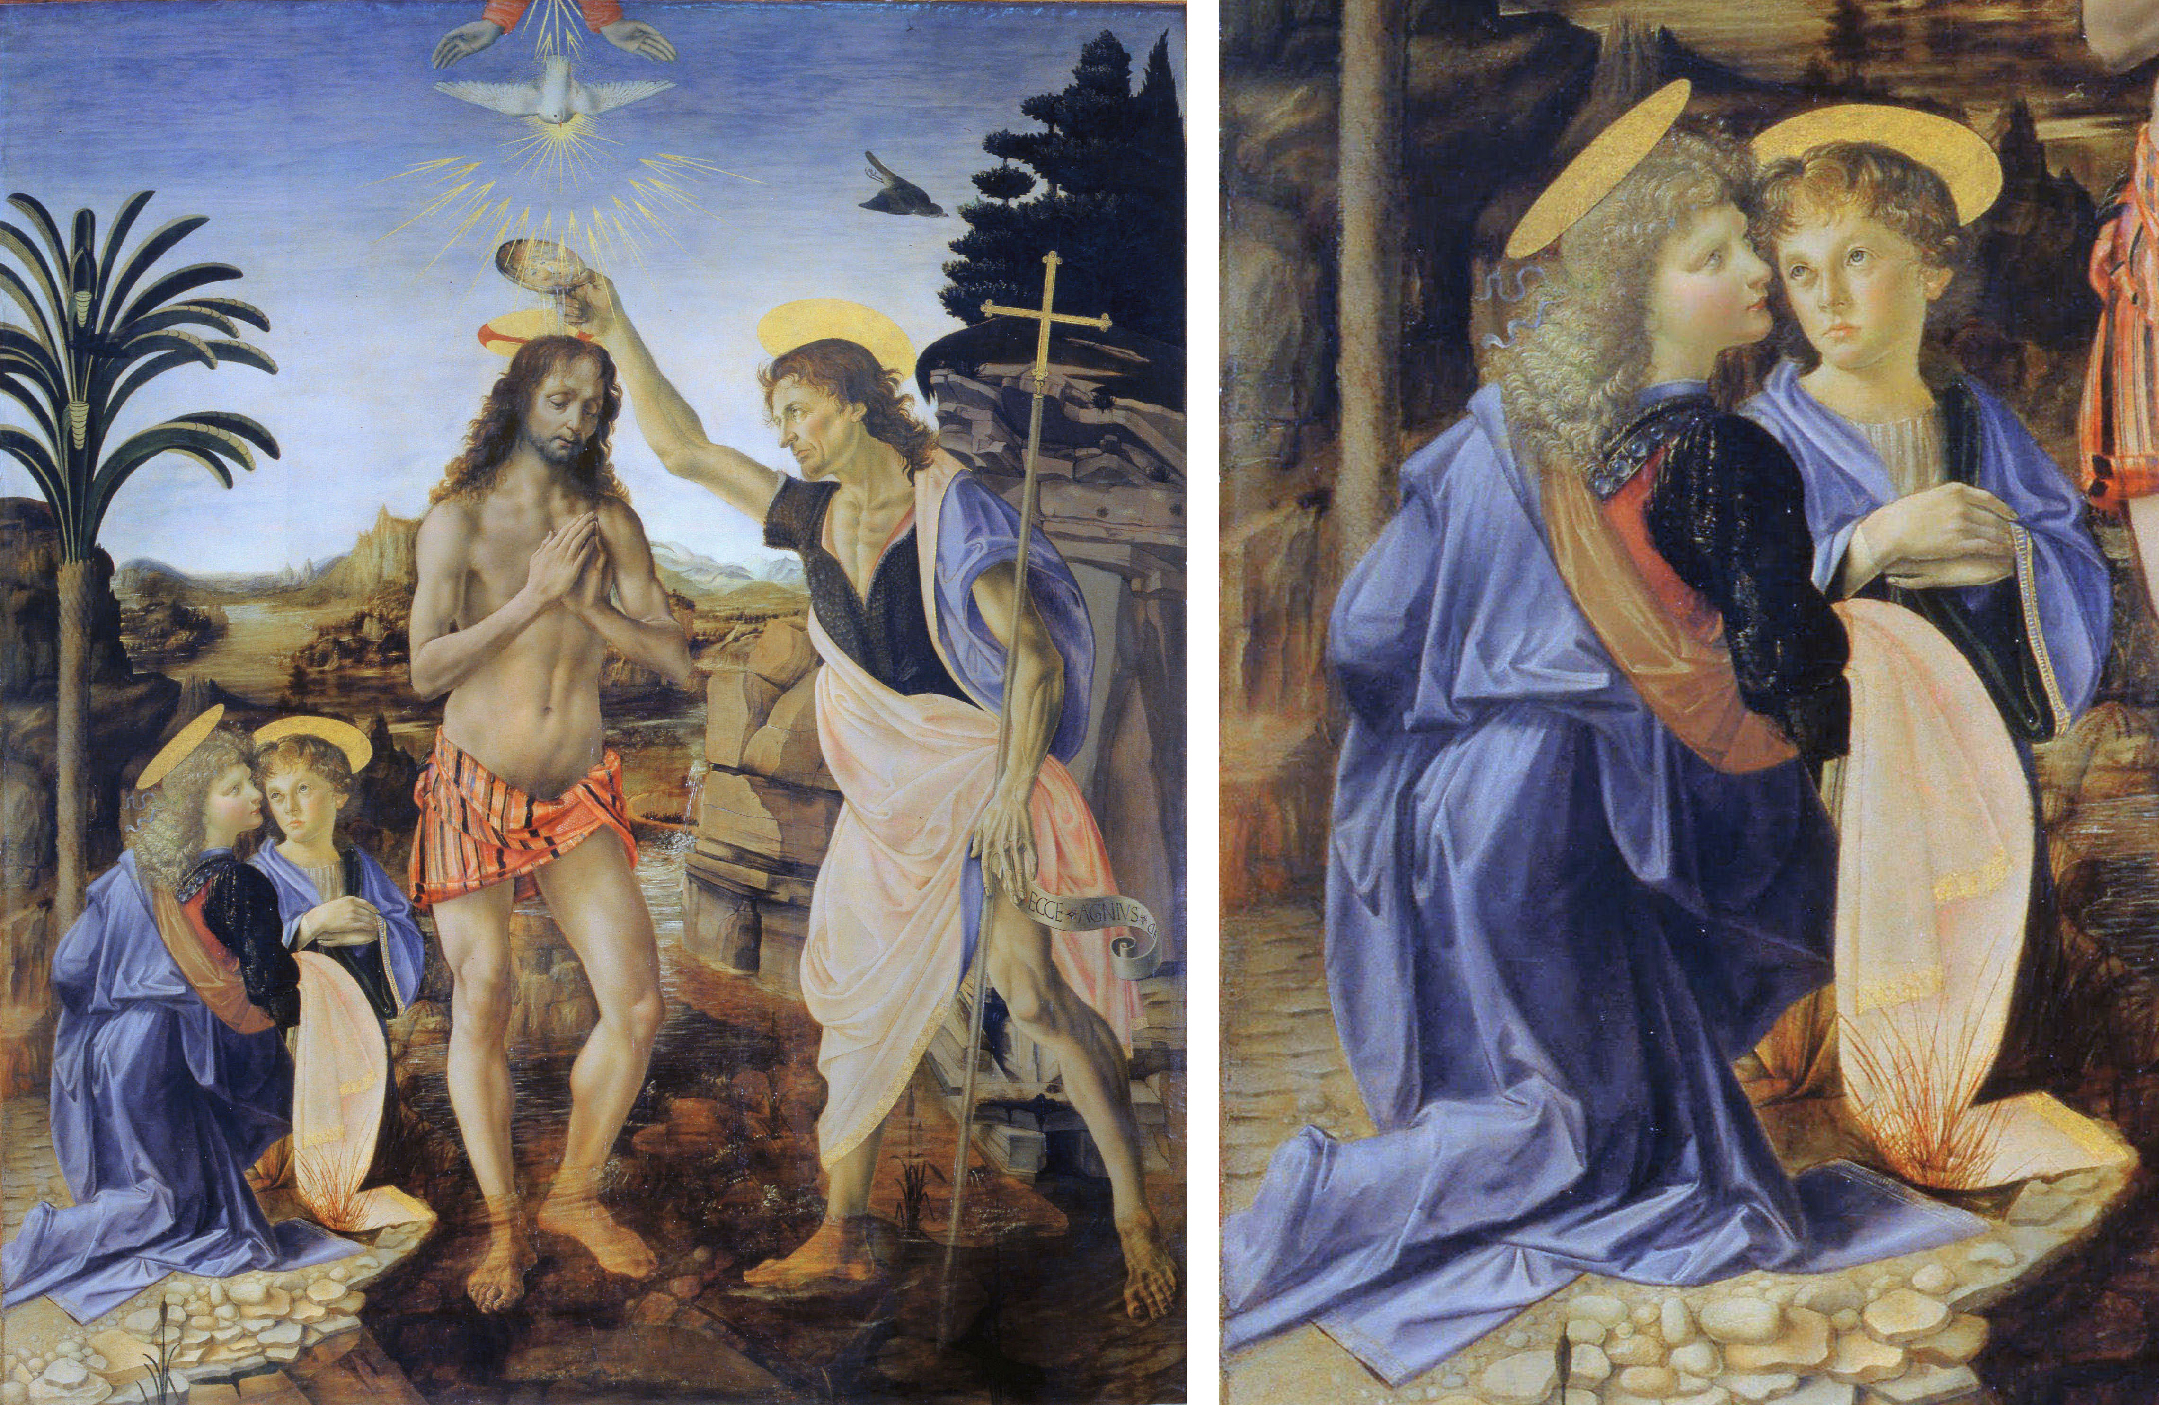 Left: Andrea del Verrocchio (with Leonardo), Baptism of Christ, 1470–75, oil and tempera on panel, 180 x 152 cm (Galleria degli Uffizi, Florence; photo: Pixel8tor); right: Angels (detail), Andrea del Verrocchio (with Leonardo), Baptism of Christ, 1470–75, oil and tempera on panel, 180 x 152 cm (Galleria degli Uffizi, Florence; photo: Pixel8tor)